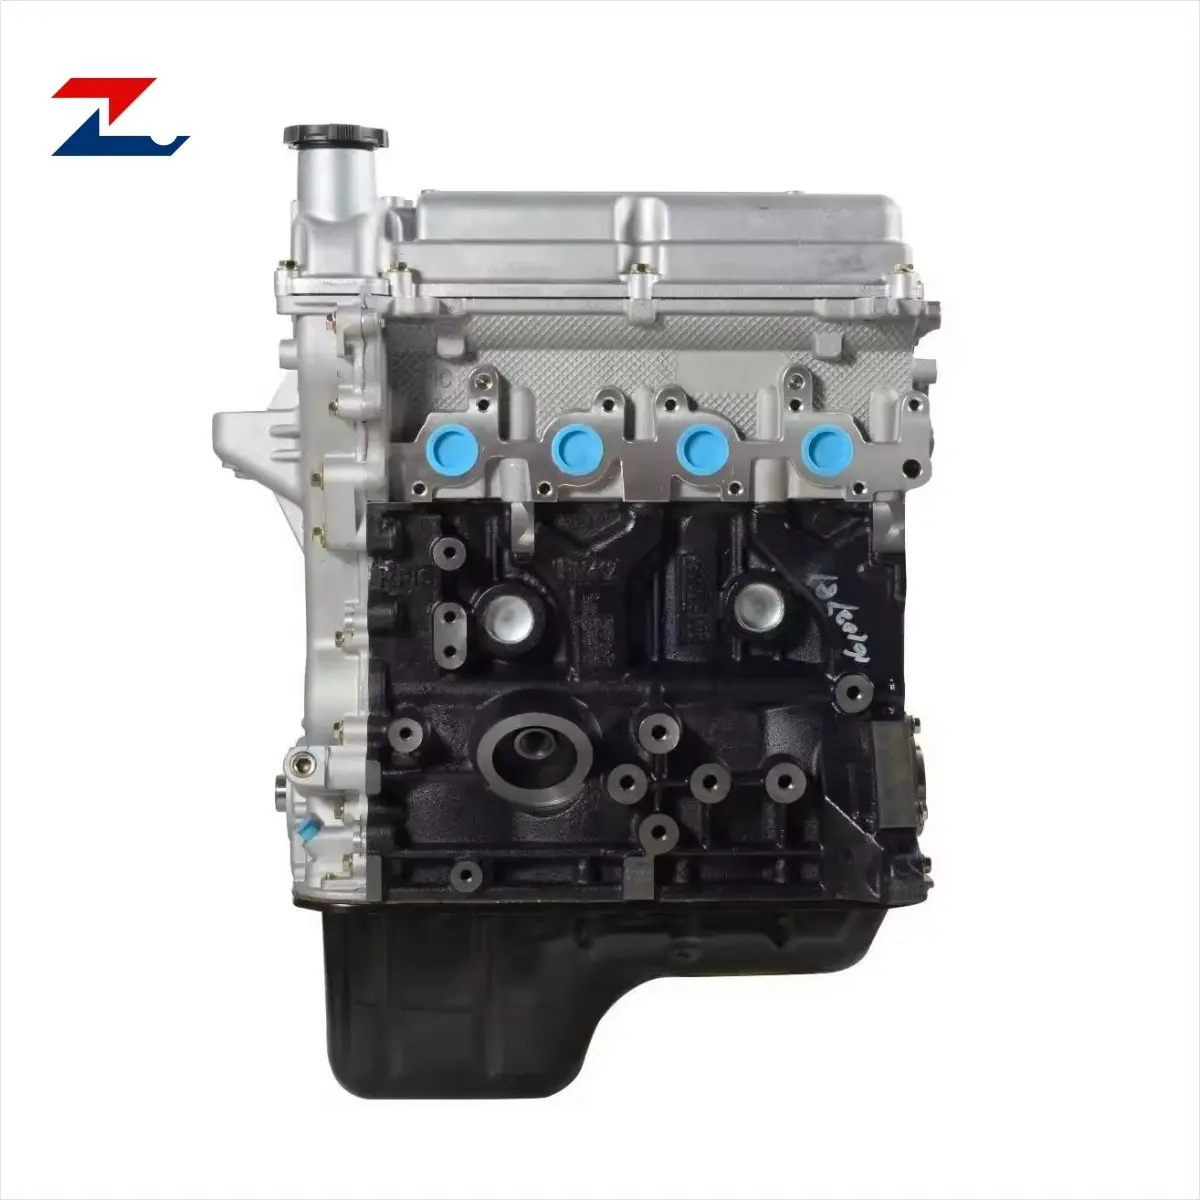 ZMC новый двигатель Chevrolet B12D1 1.2L 62 кВт 114 Нм 4-цилиндровый автоматический двигатель для Chevrolet Spark M300 в 2009-2015